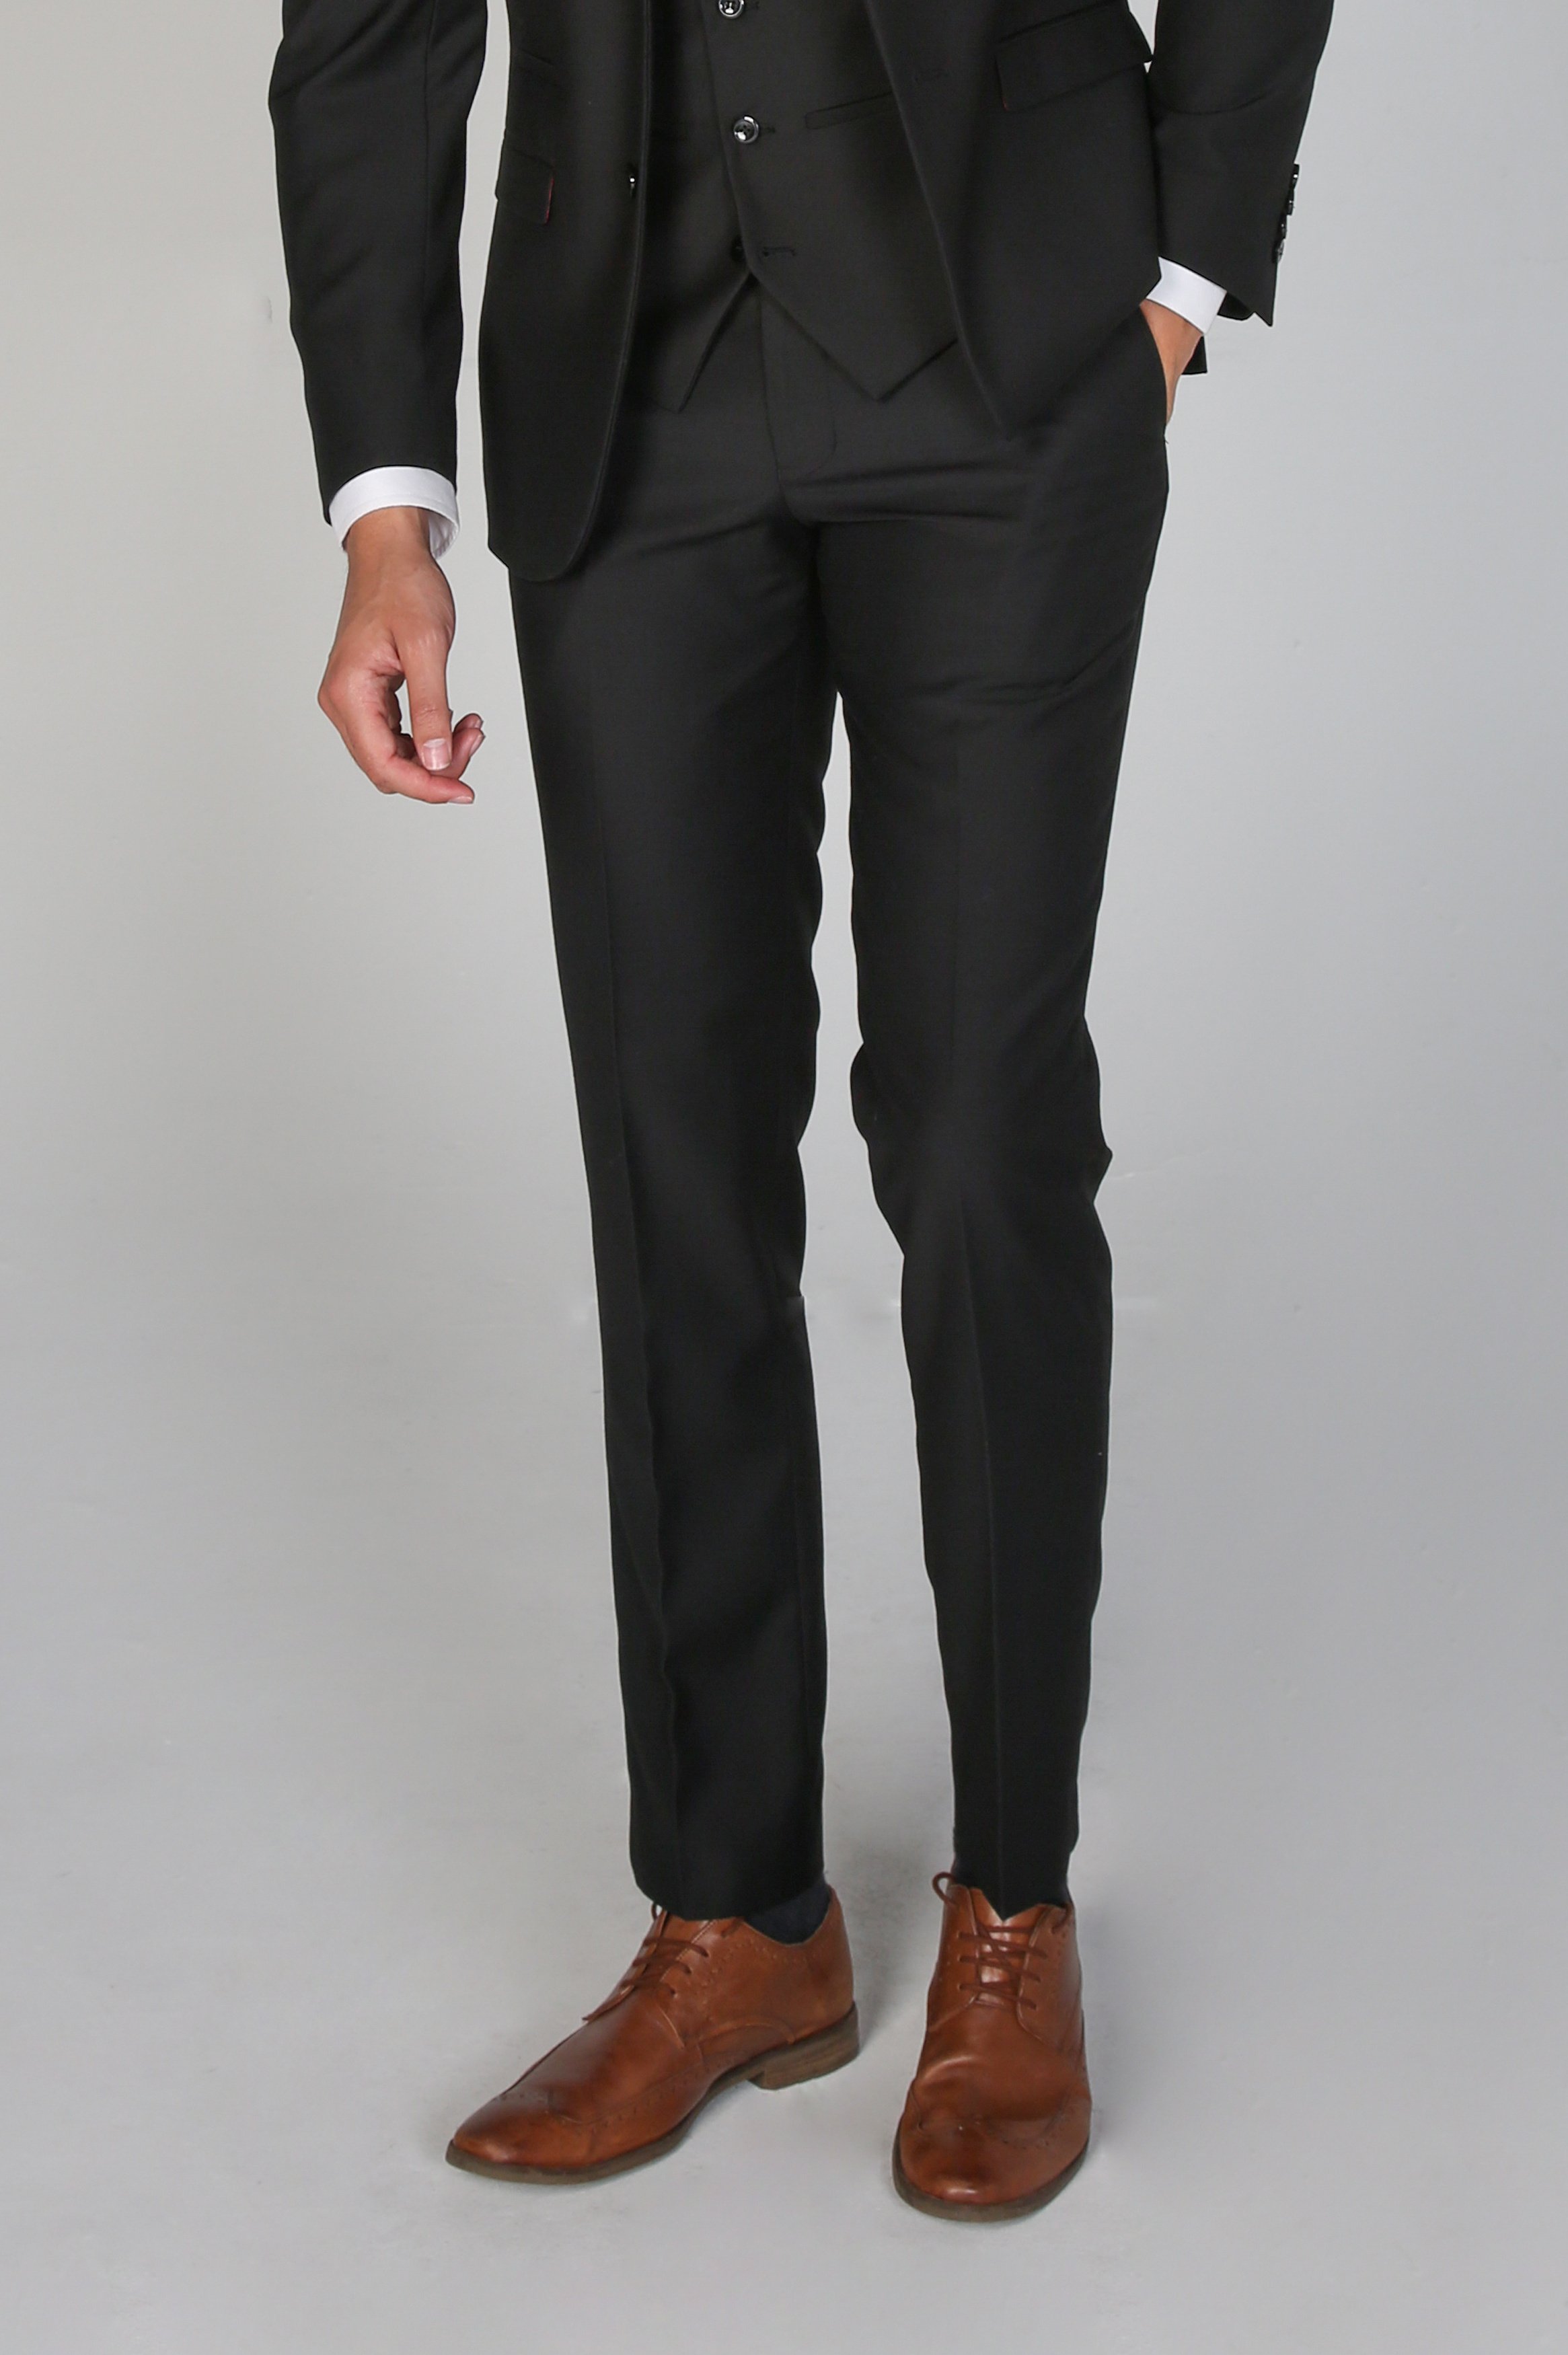 Men's Tailored Fit Black Trousers - PARKER